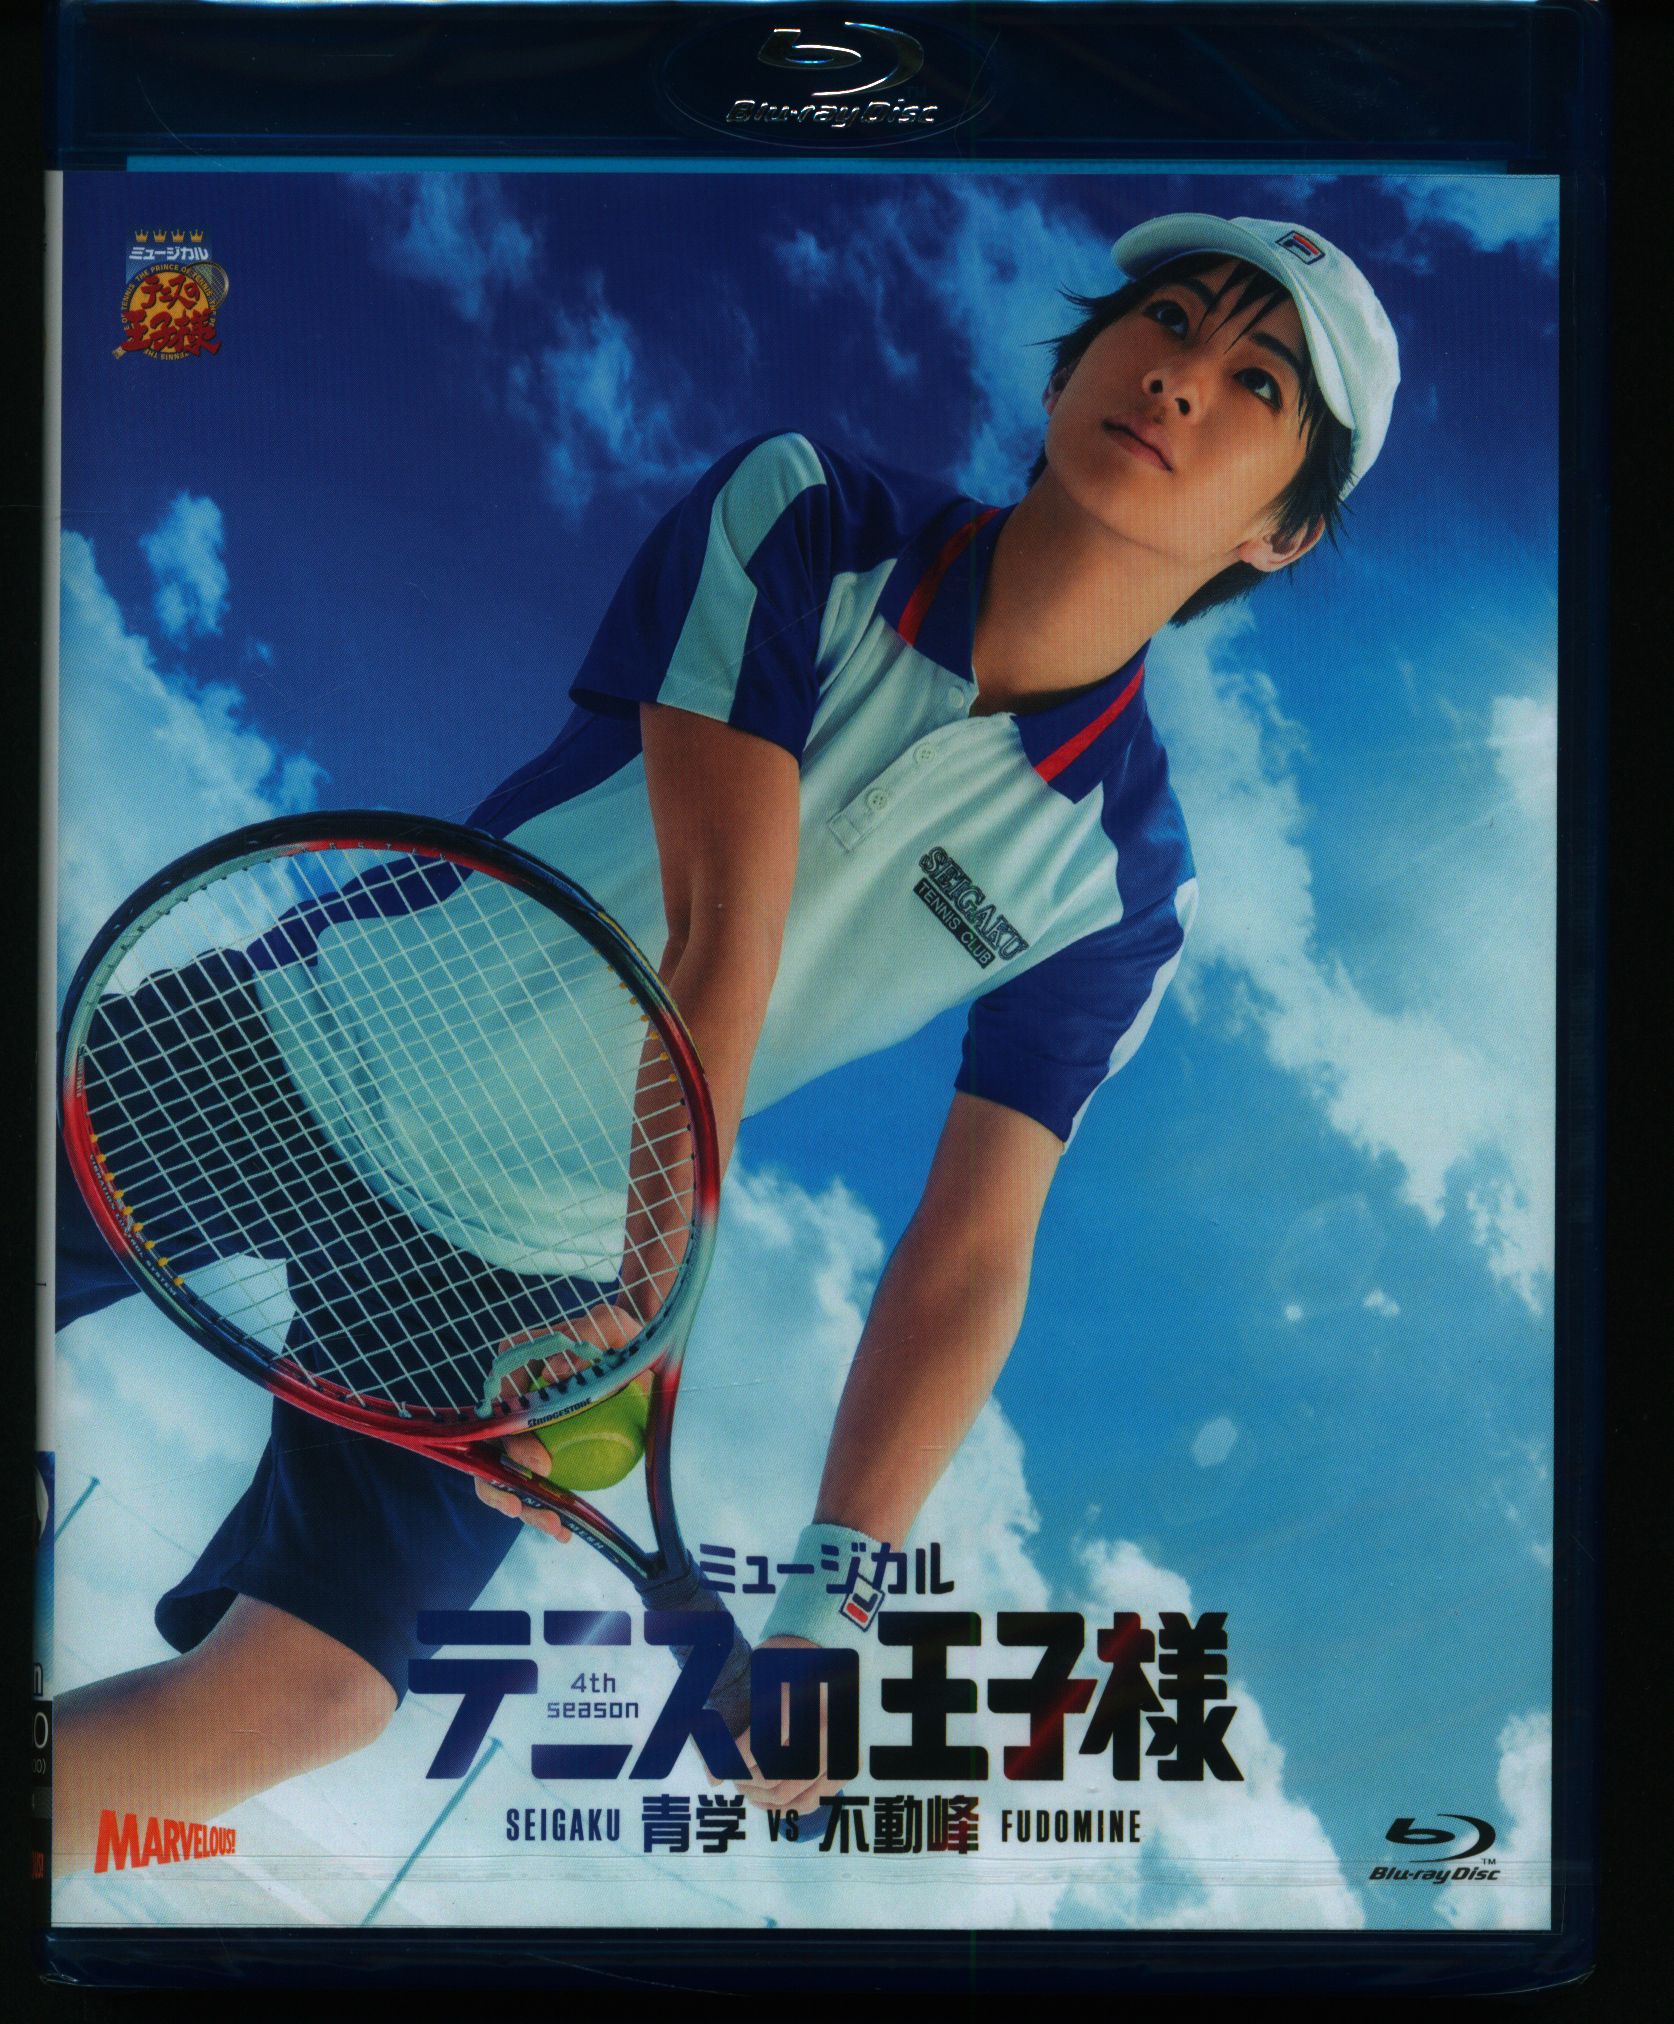 舞台Blu-ray ミュージカル『テニスの王子様』4thシーズン 青学vs不動峰 